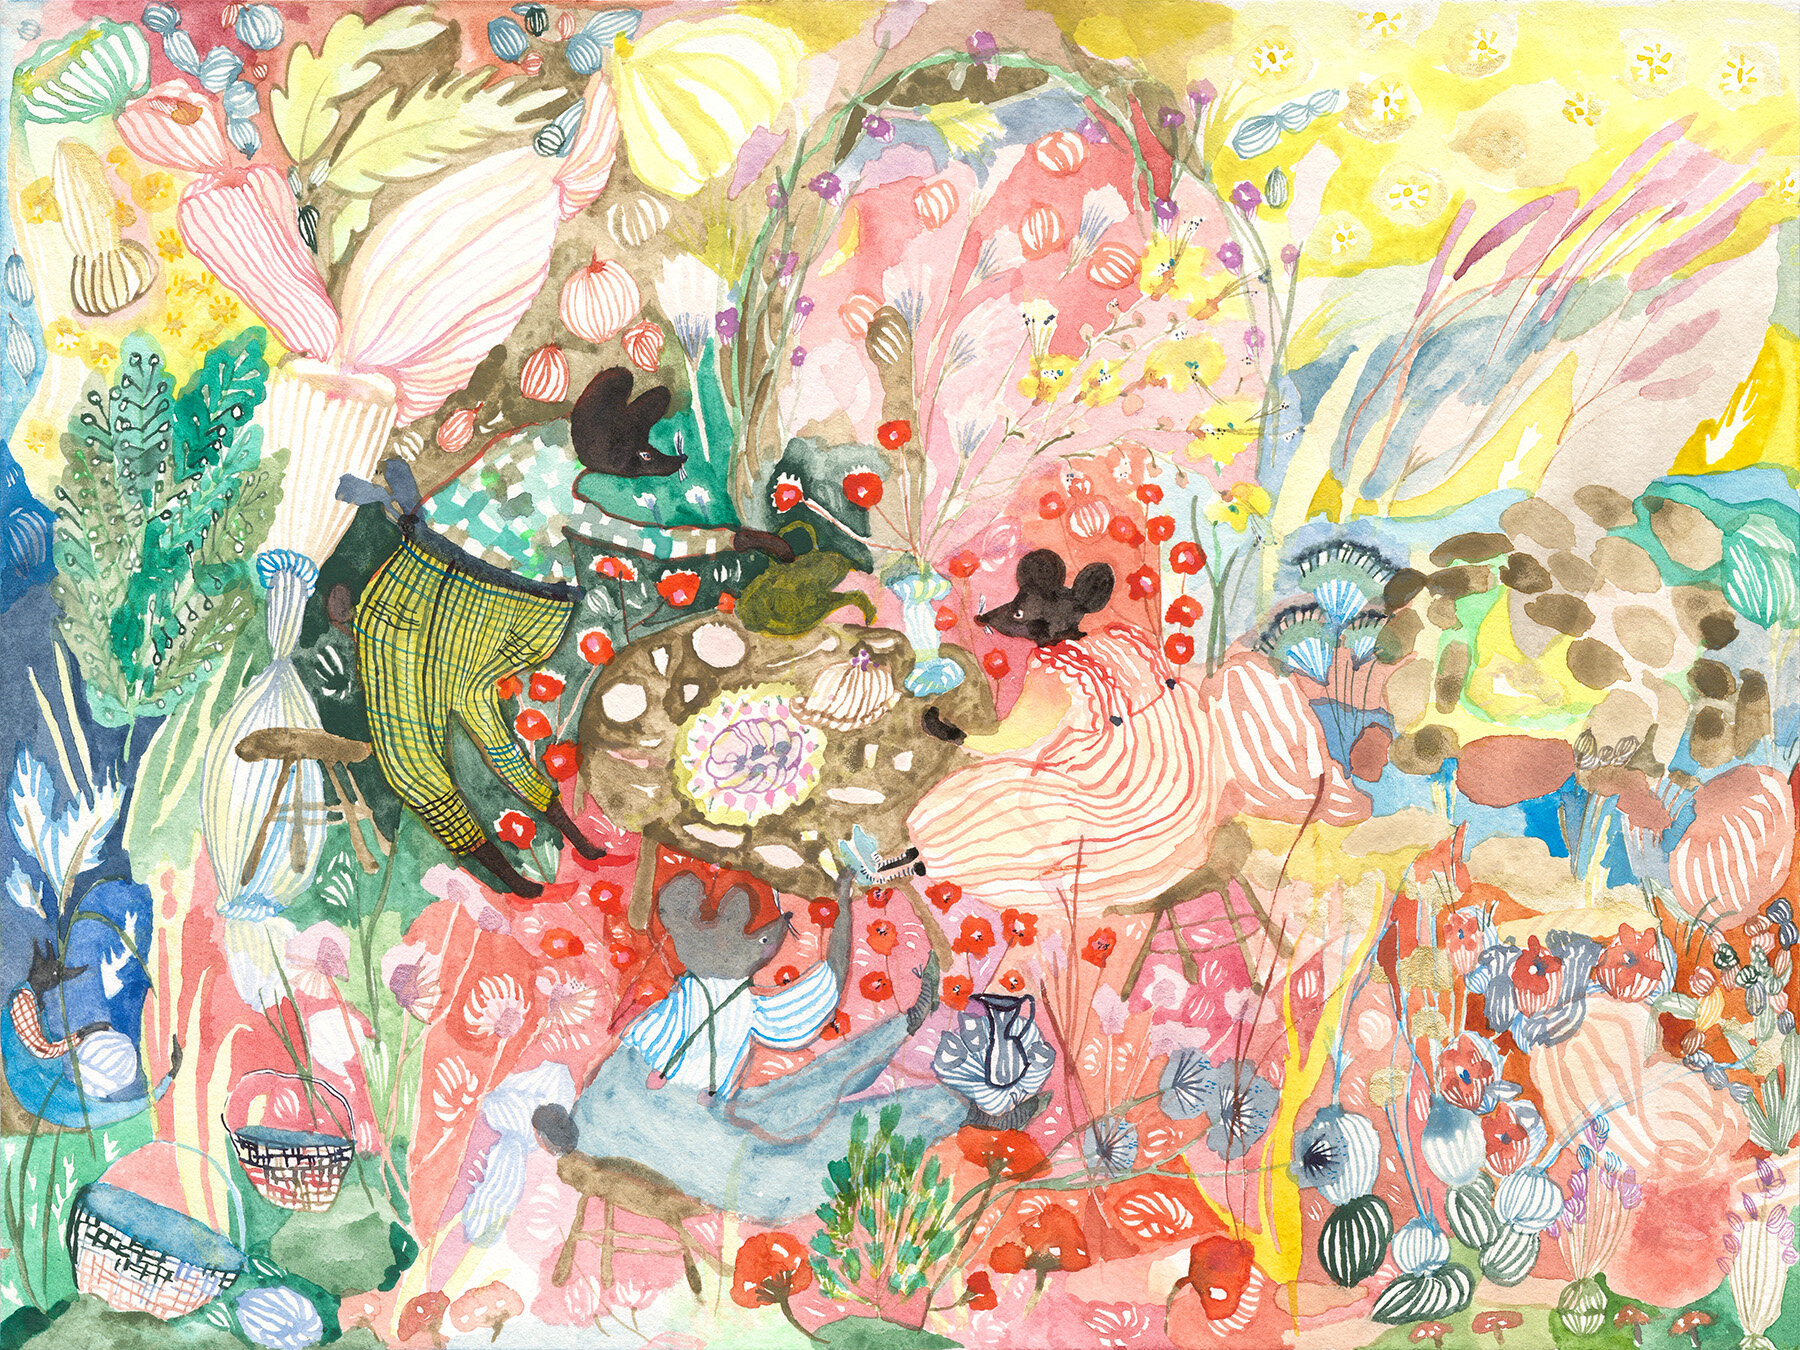  Garden Tea  Watercolor on paper, 2020  9” x 12”  Sold 